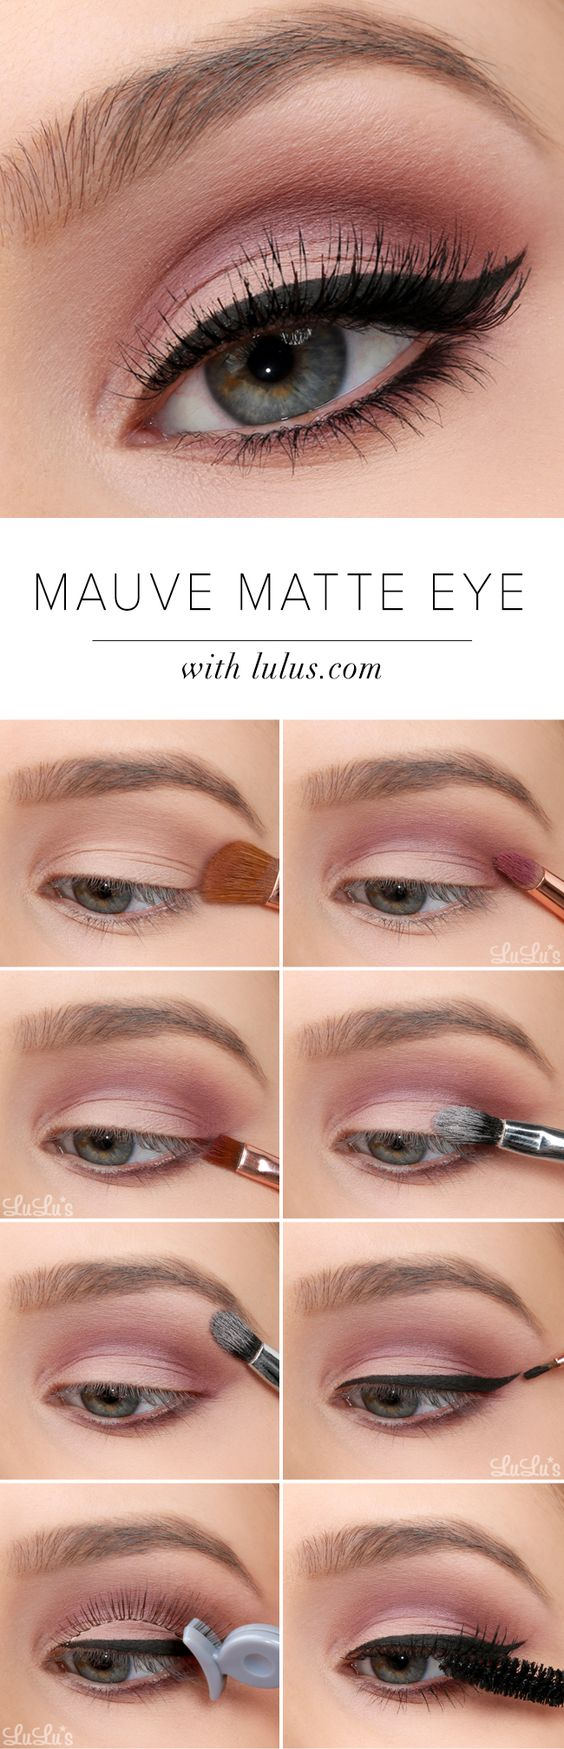 Easy Natural Eye Makeup Tutorial 20 Easy Step Step Eyeshadow Tutorials For Beginners Her Style Code